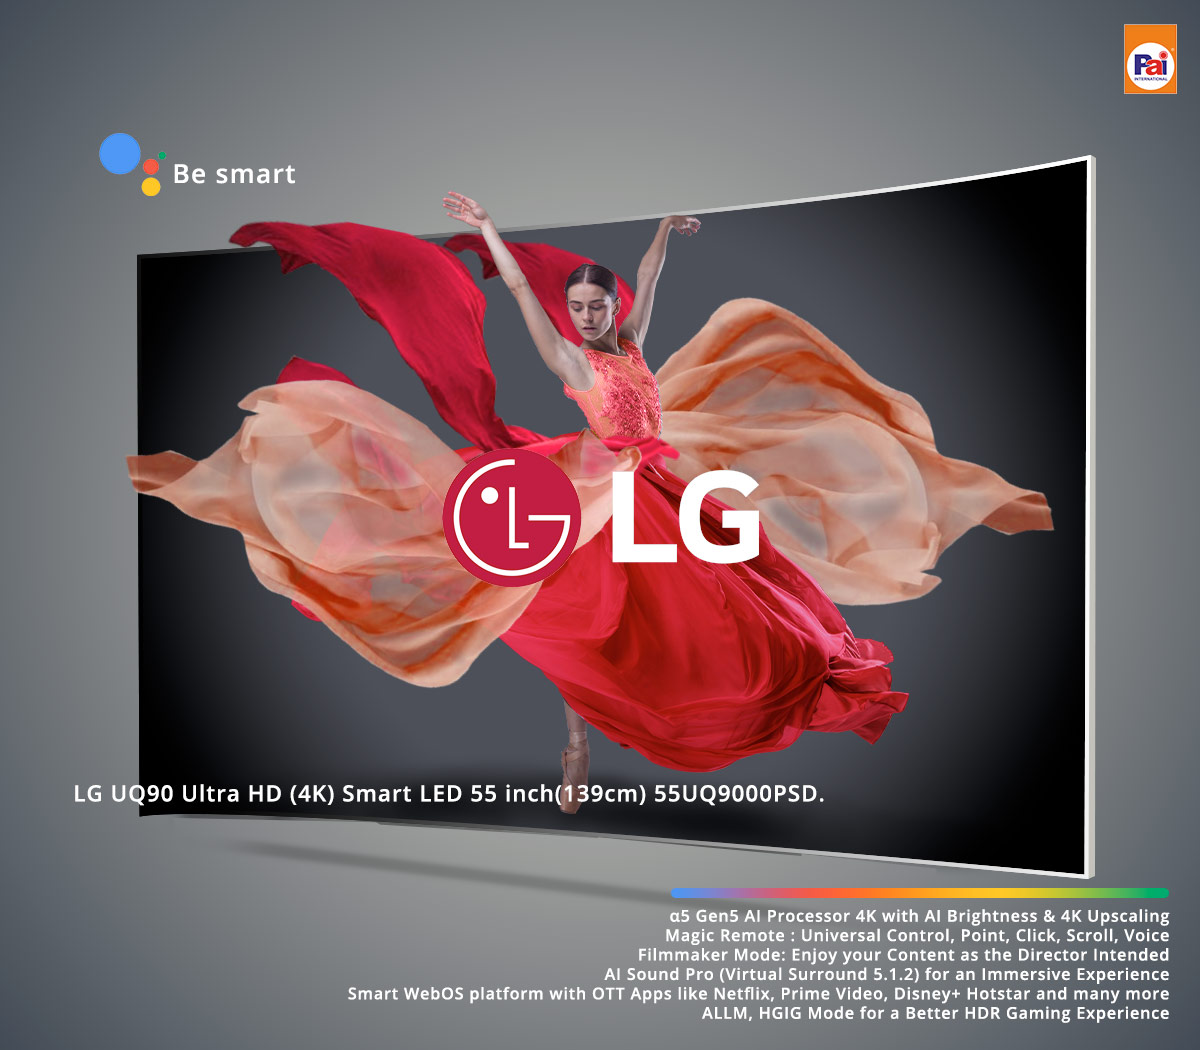 LG UQ90 Ultra HD (4K) Smart LED 55 inch(